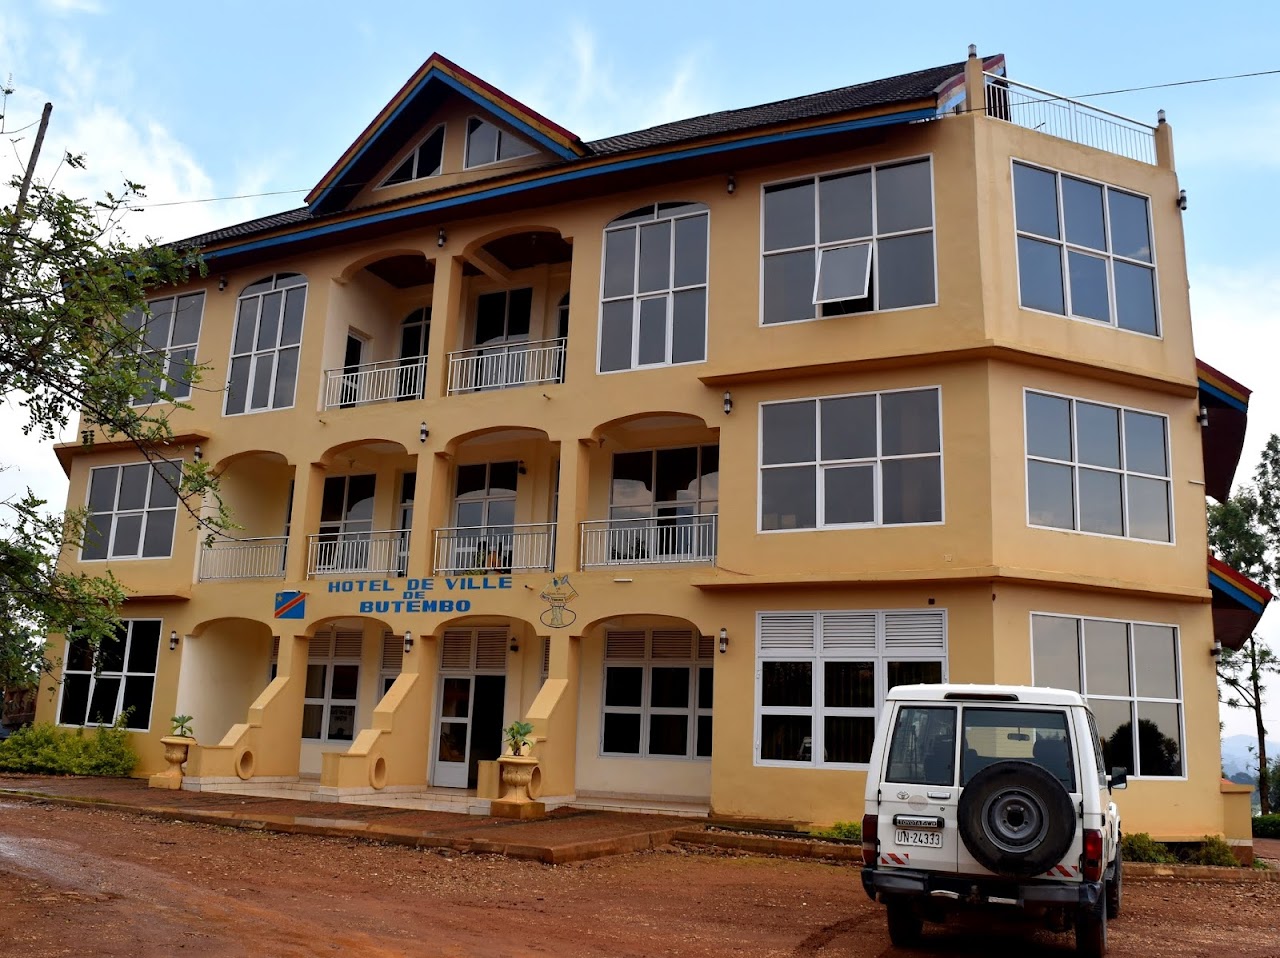 Nord-Kivu : plus de 2 millions $ détournés à la Mairie de Butembo pendant l’état de siège, alerte la Lucha